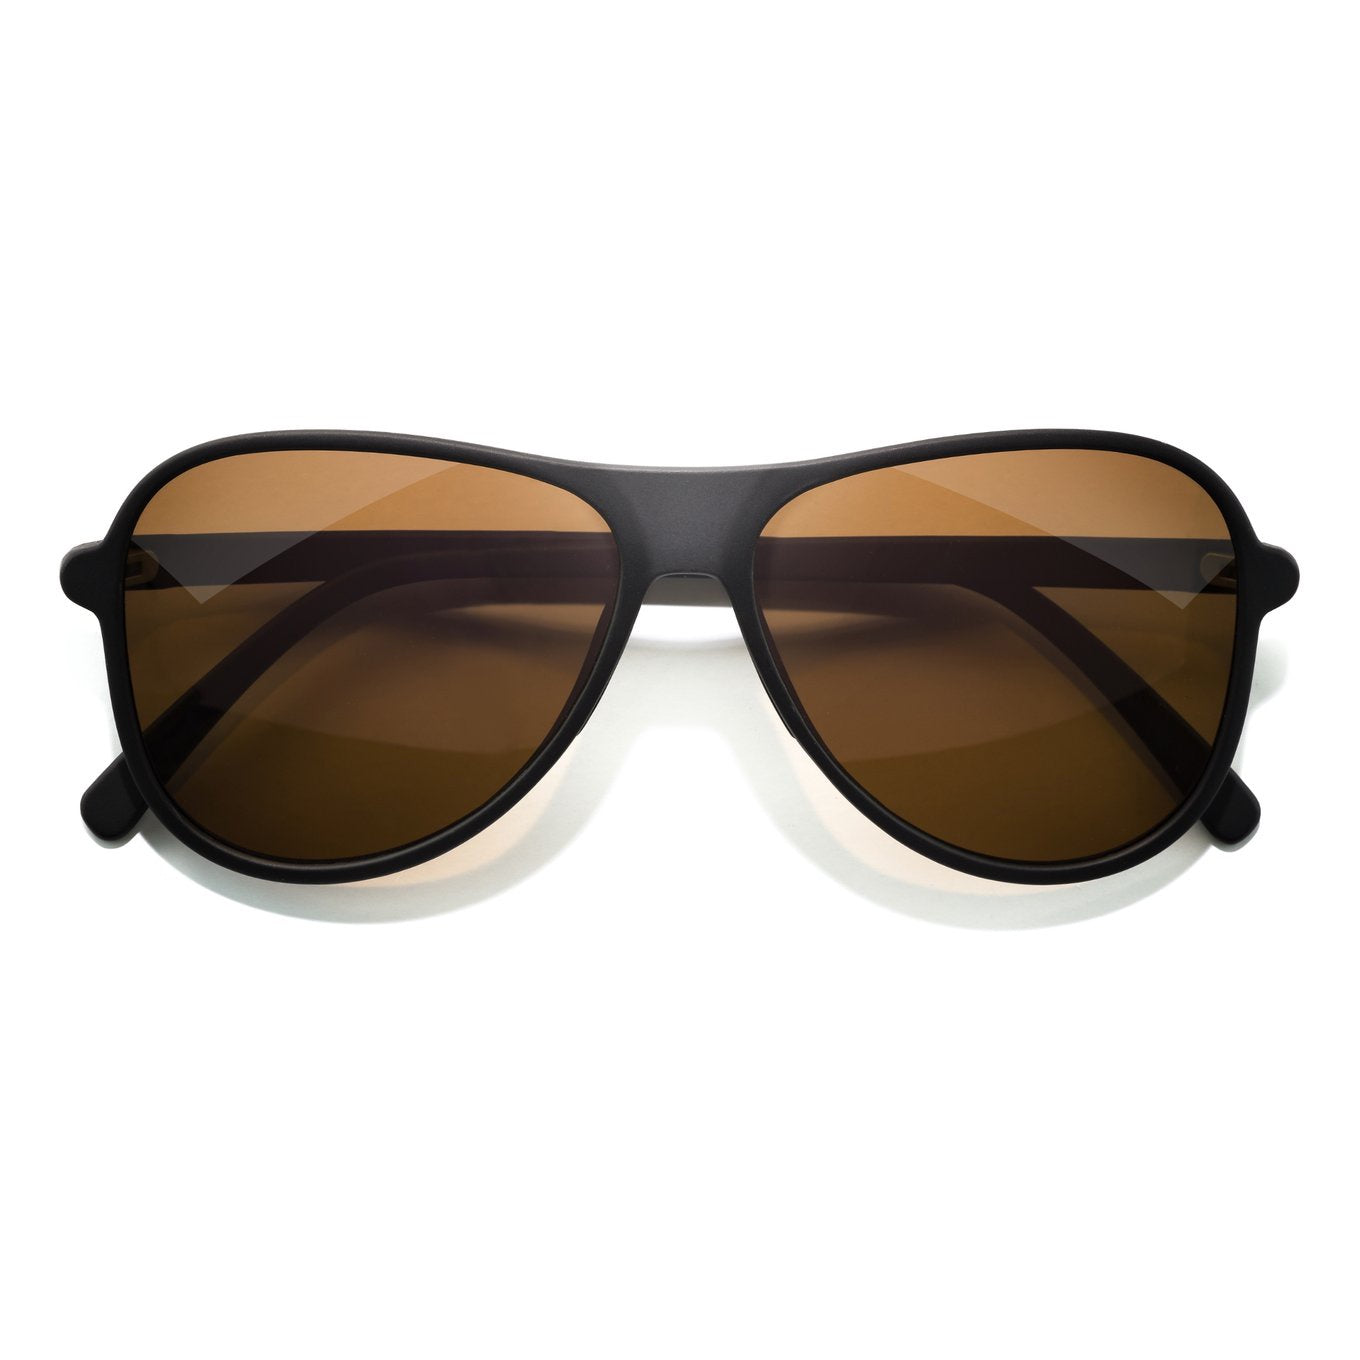 SUNSKI Sunglasses - Foxtrot Black Bronze